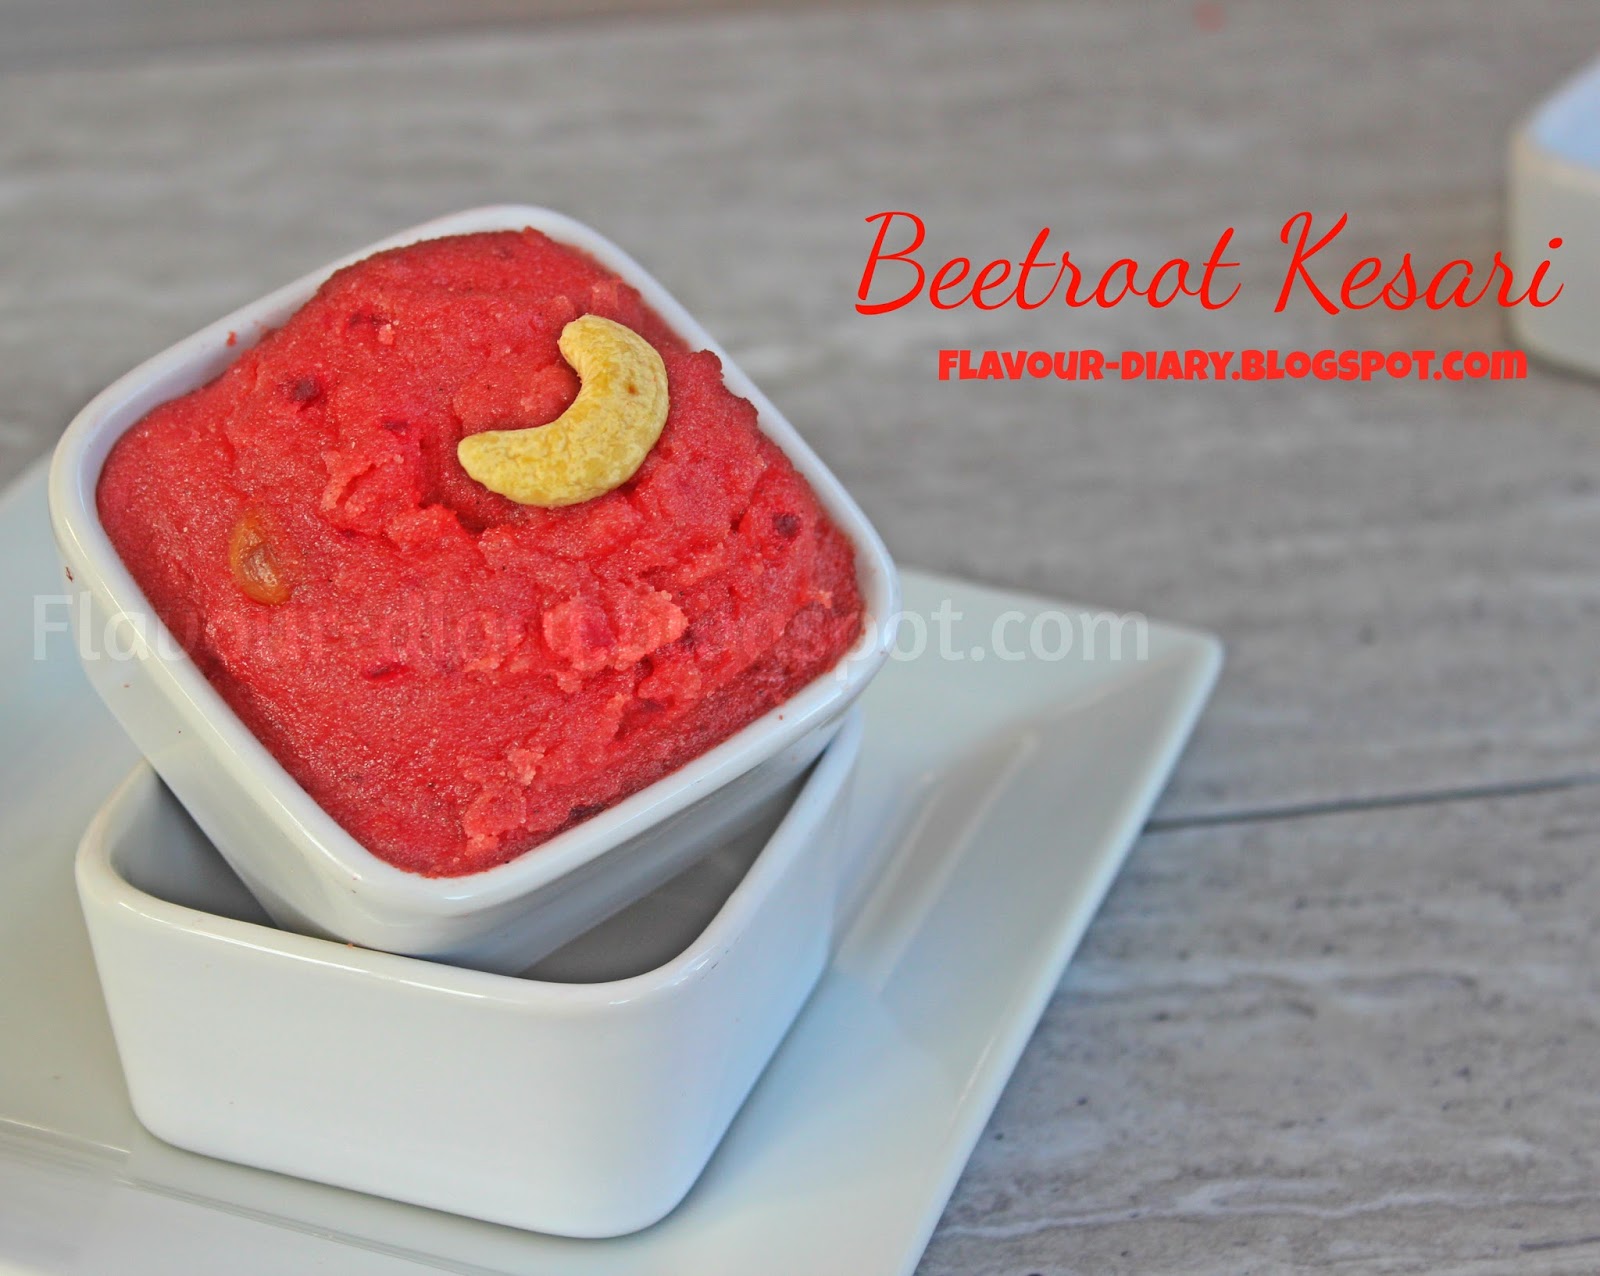 Beetroot kesari recipe